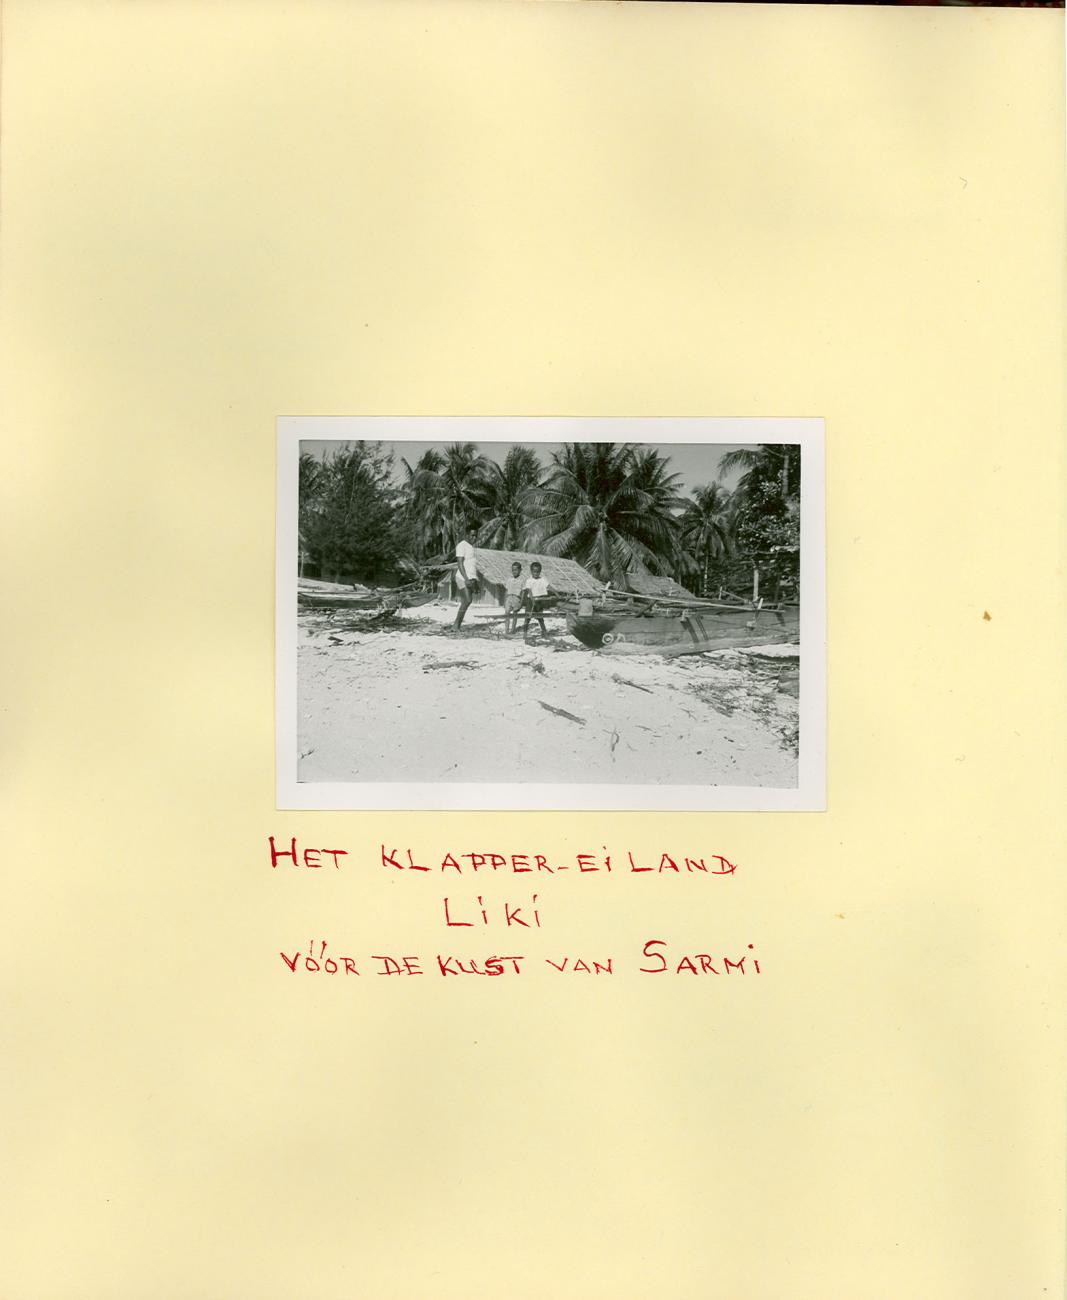 BD/83/28 - 
Het klapper-eiland Liki voor de kust van Sarmi
